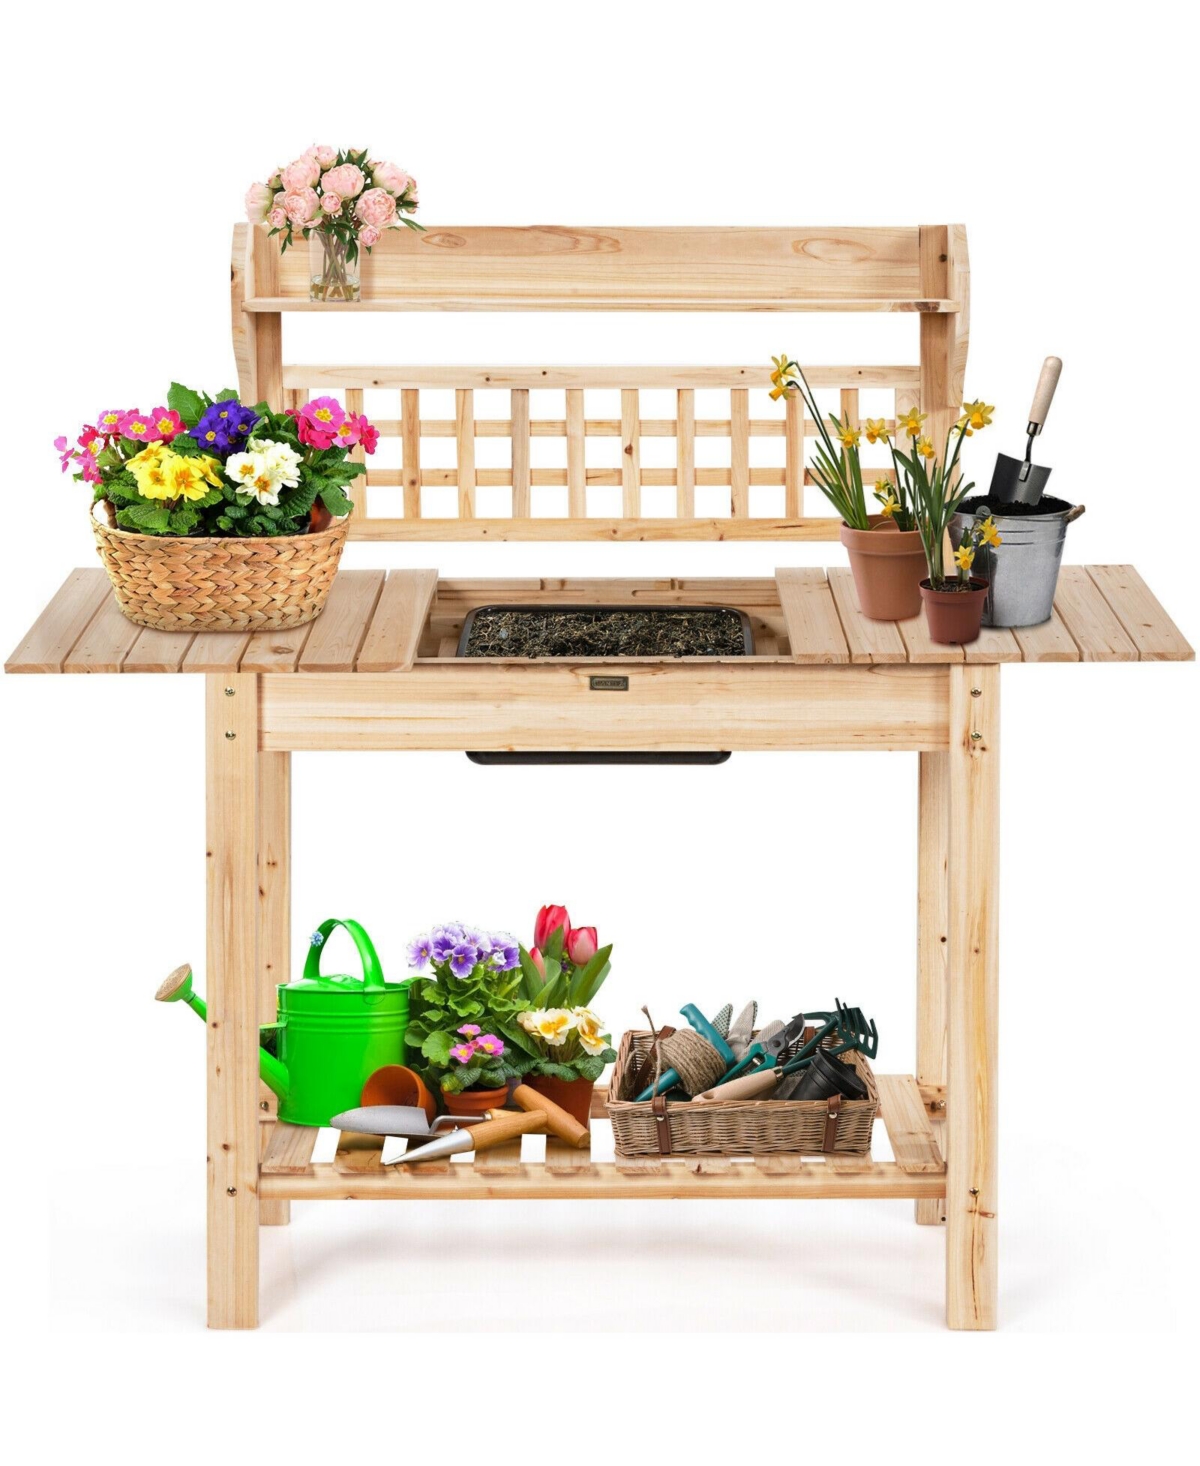 Garden Potting Bench Workstation Table with Sliding Tabletop Sink Shelves - Natural